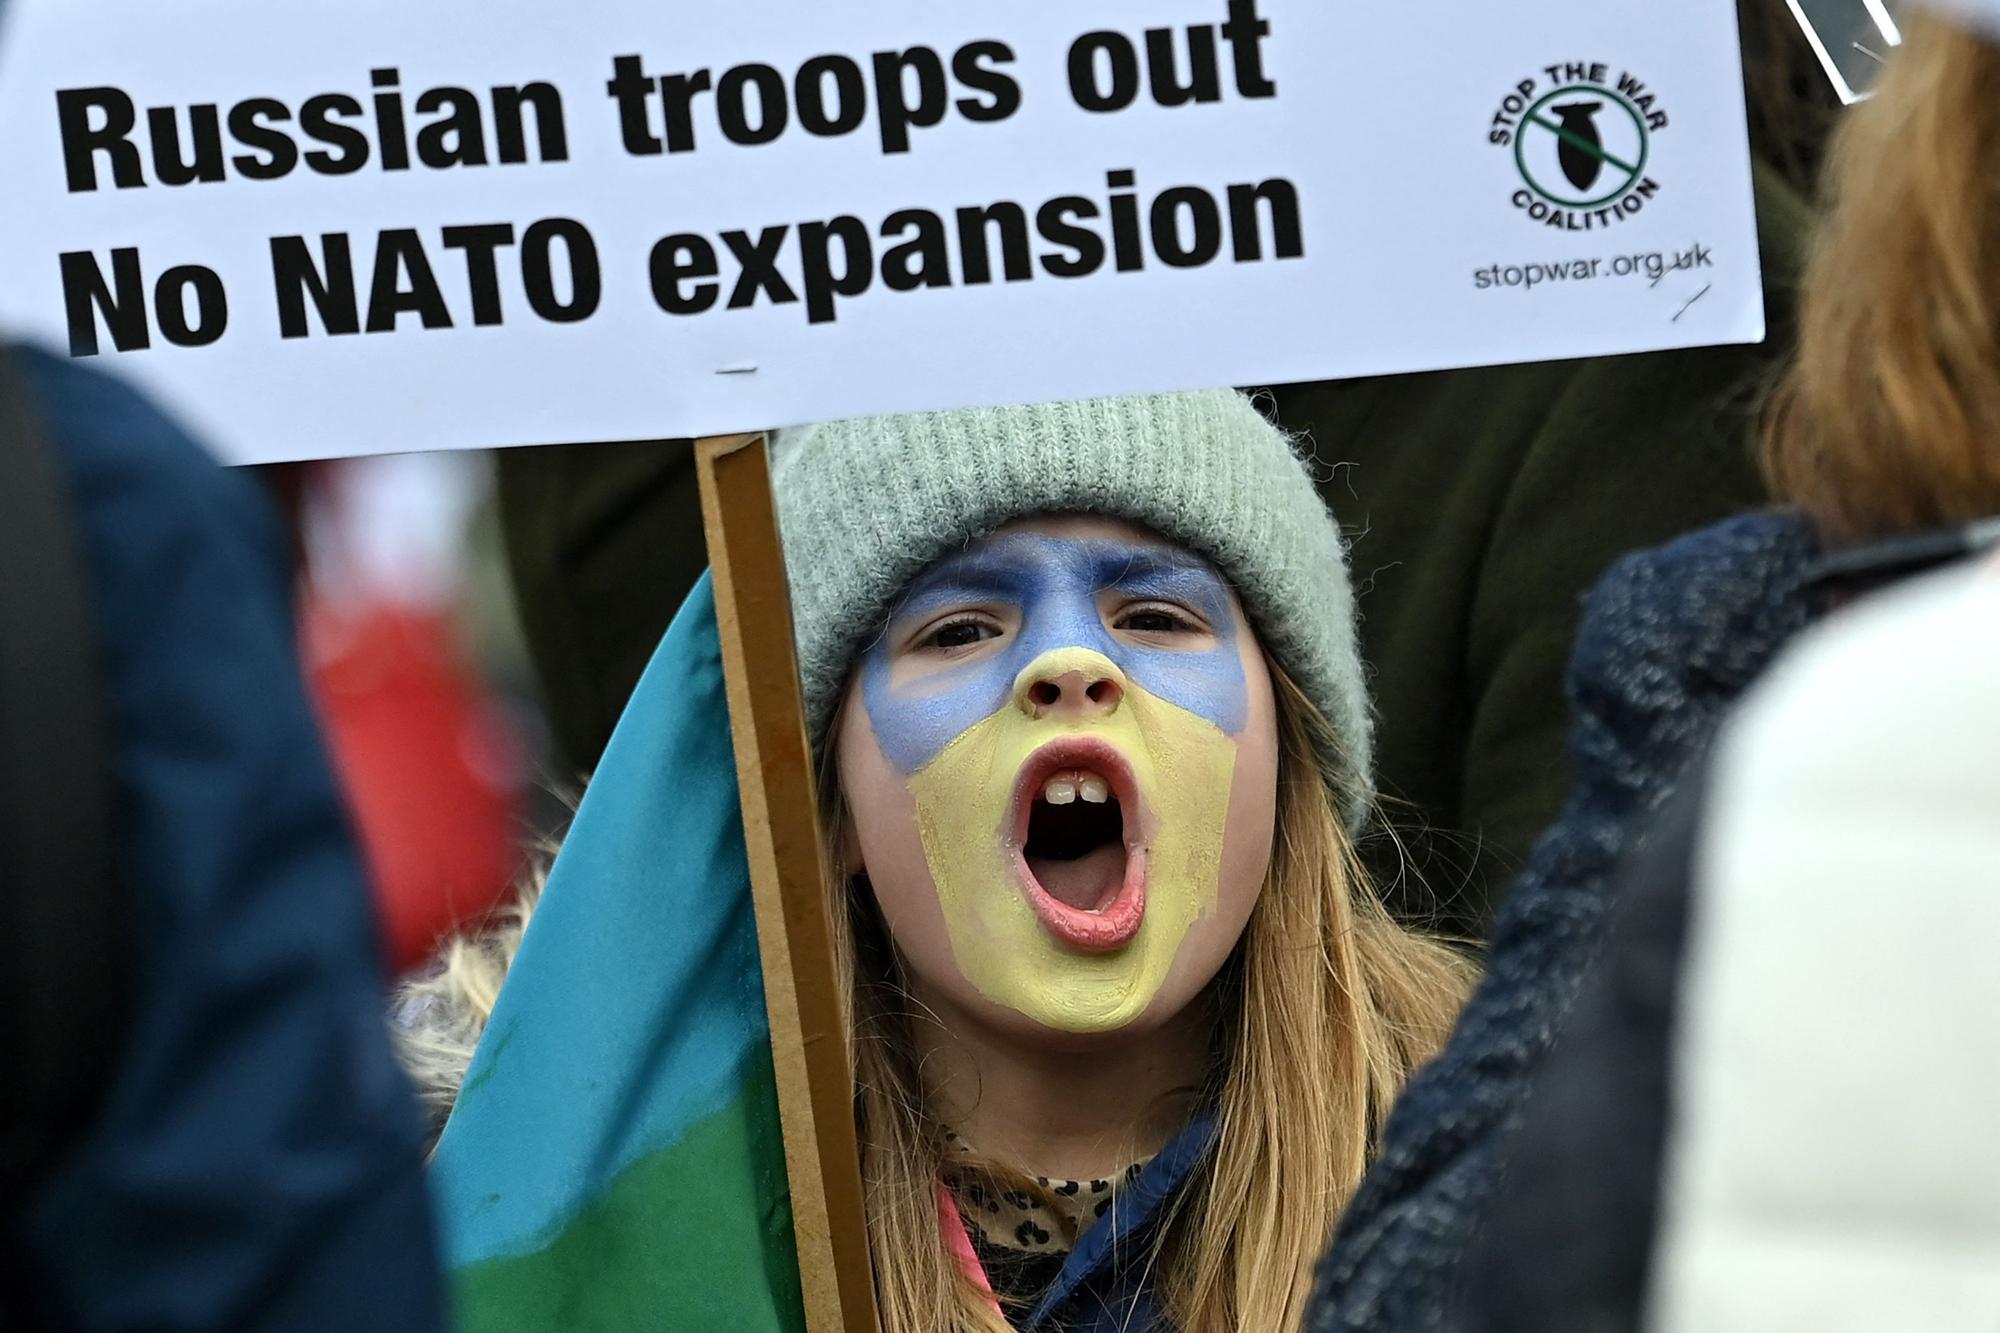 Fuera las tropas rusas y no expansión de la OTAN